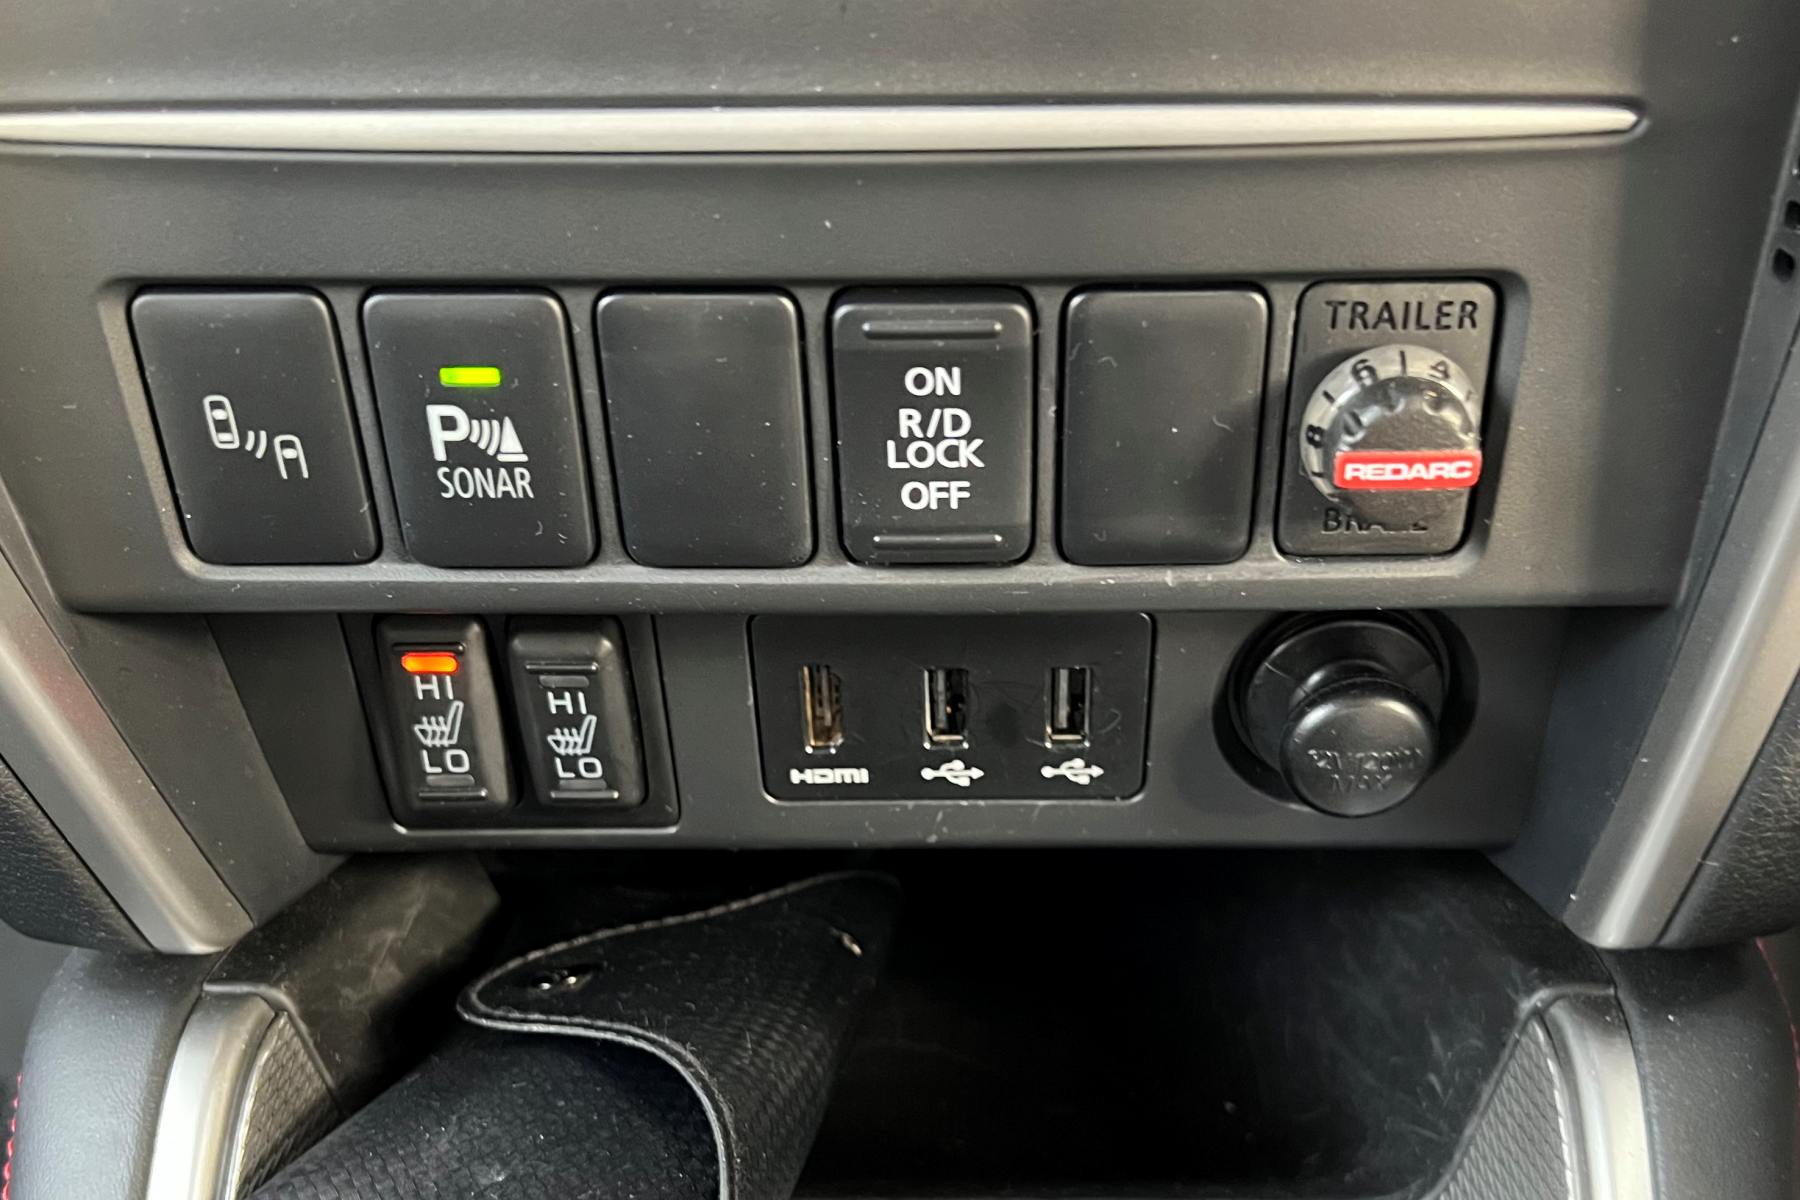 Mitsubishi Triton GLS Sport 4WD Dual Cab Ute central stack controls